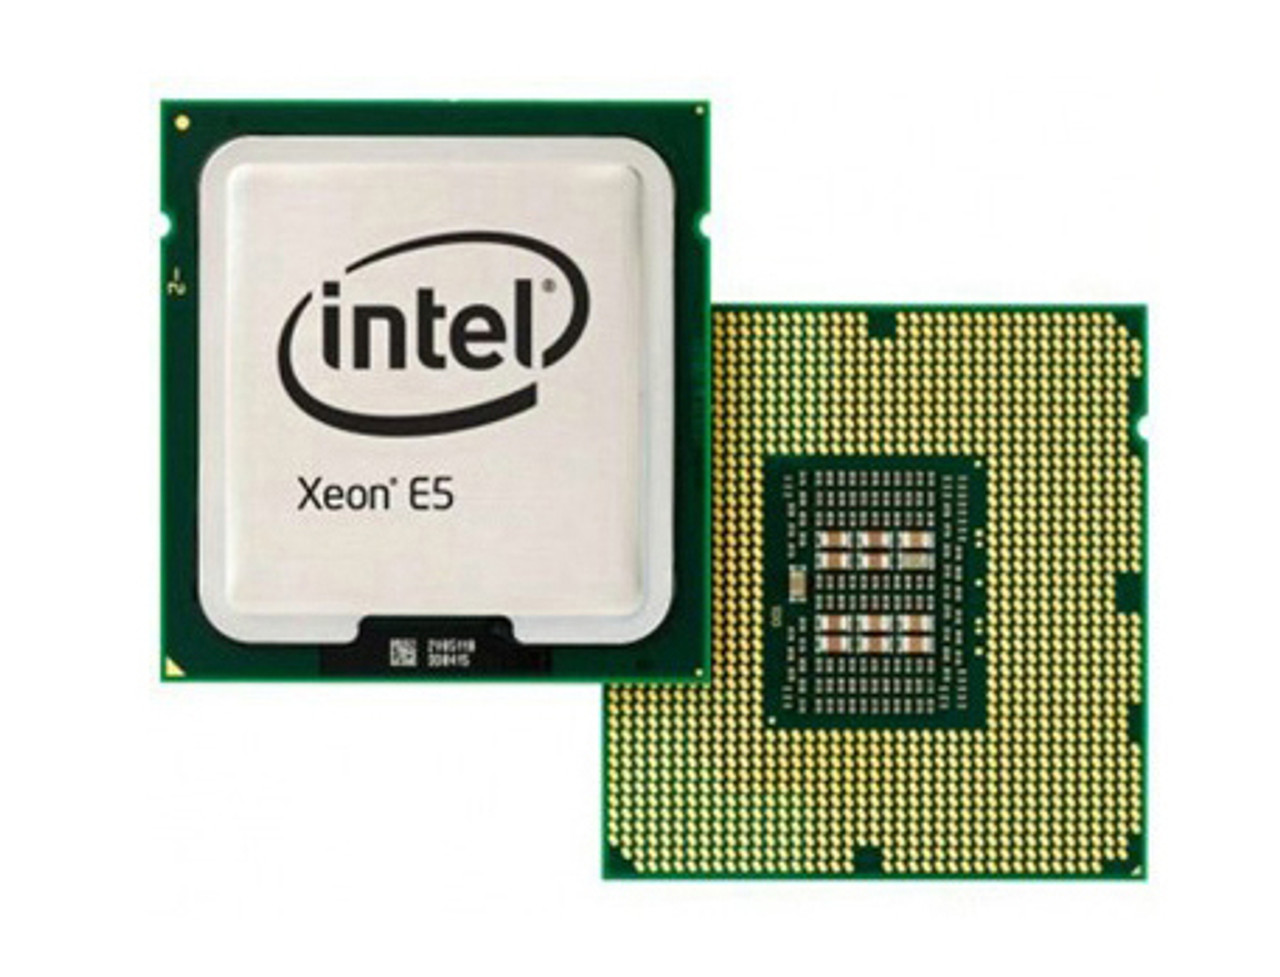 AT80574KJ067N - Intel Xeon E5430 Quad Core 2.66GHz 1333MHz FSB 12MB L2 Cache Socket LGA771 Processor